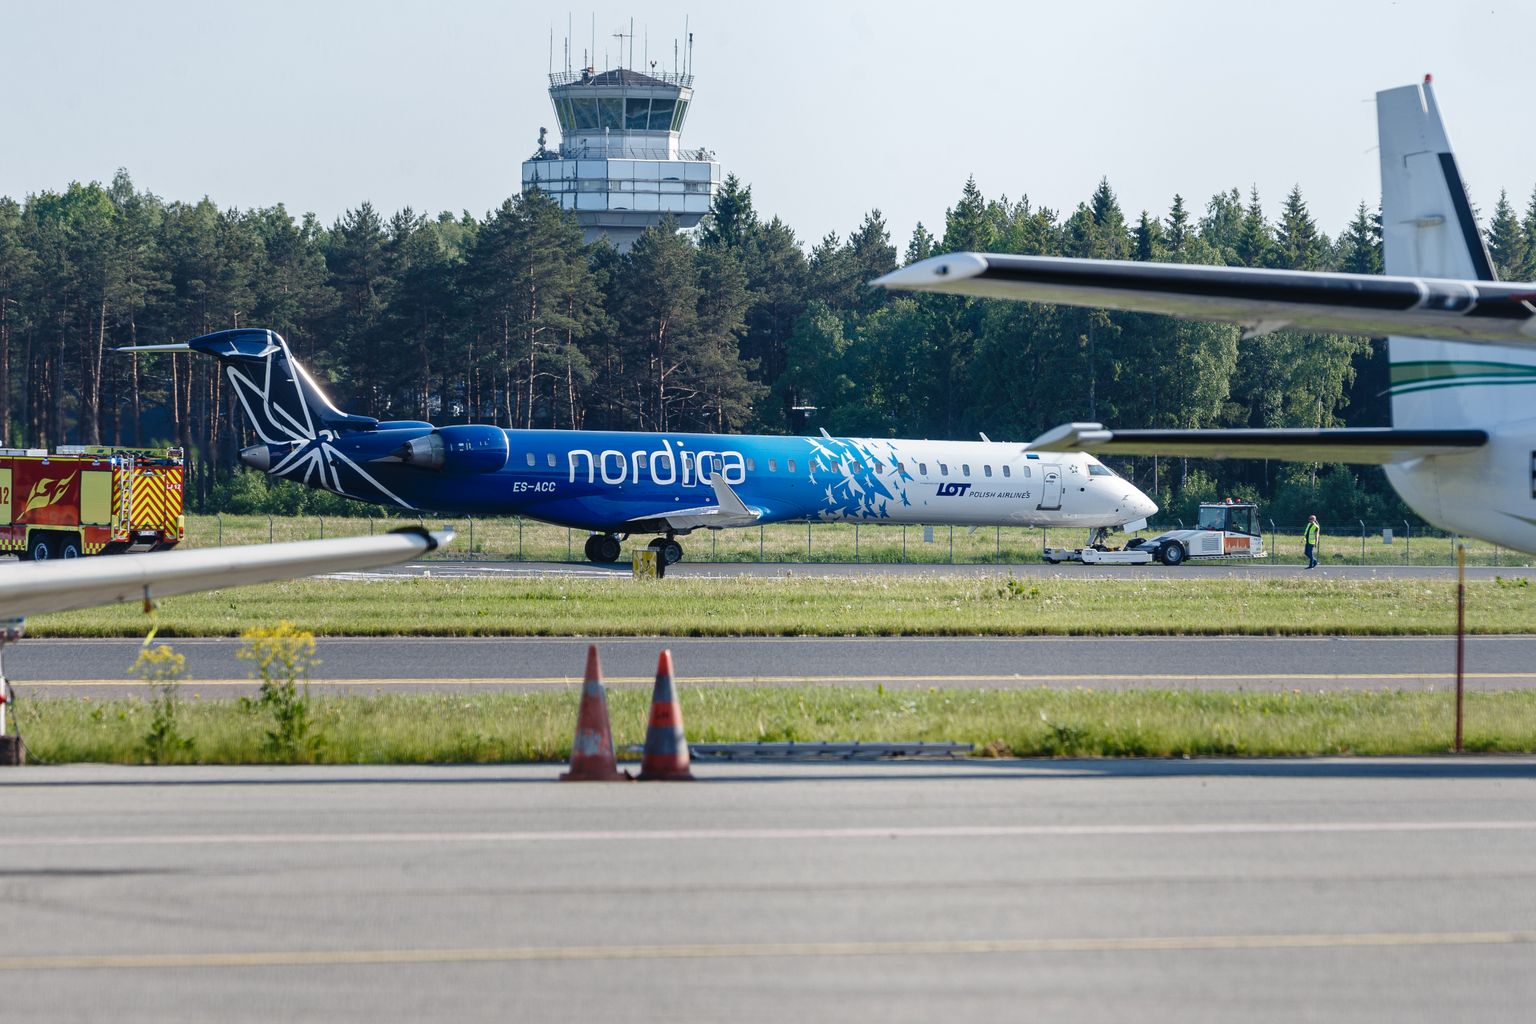 Regional Jet on Nordica tütarfirma.